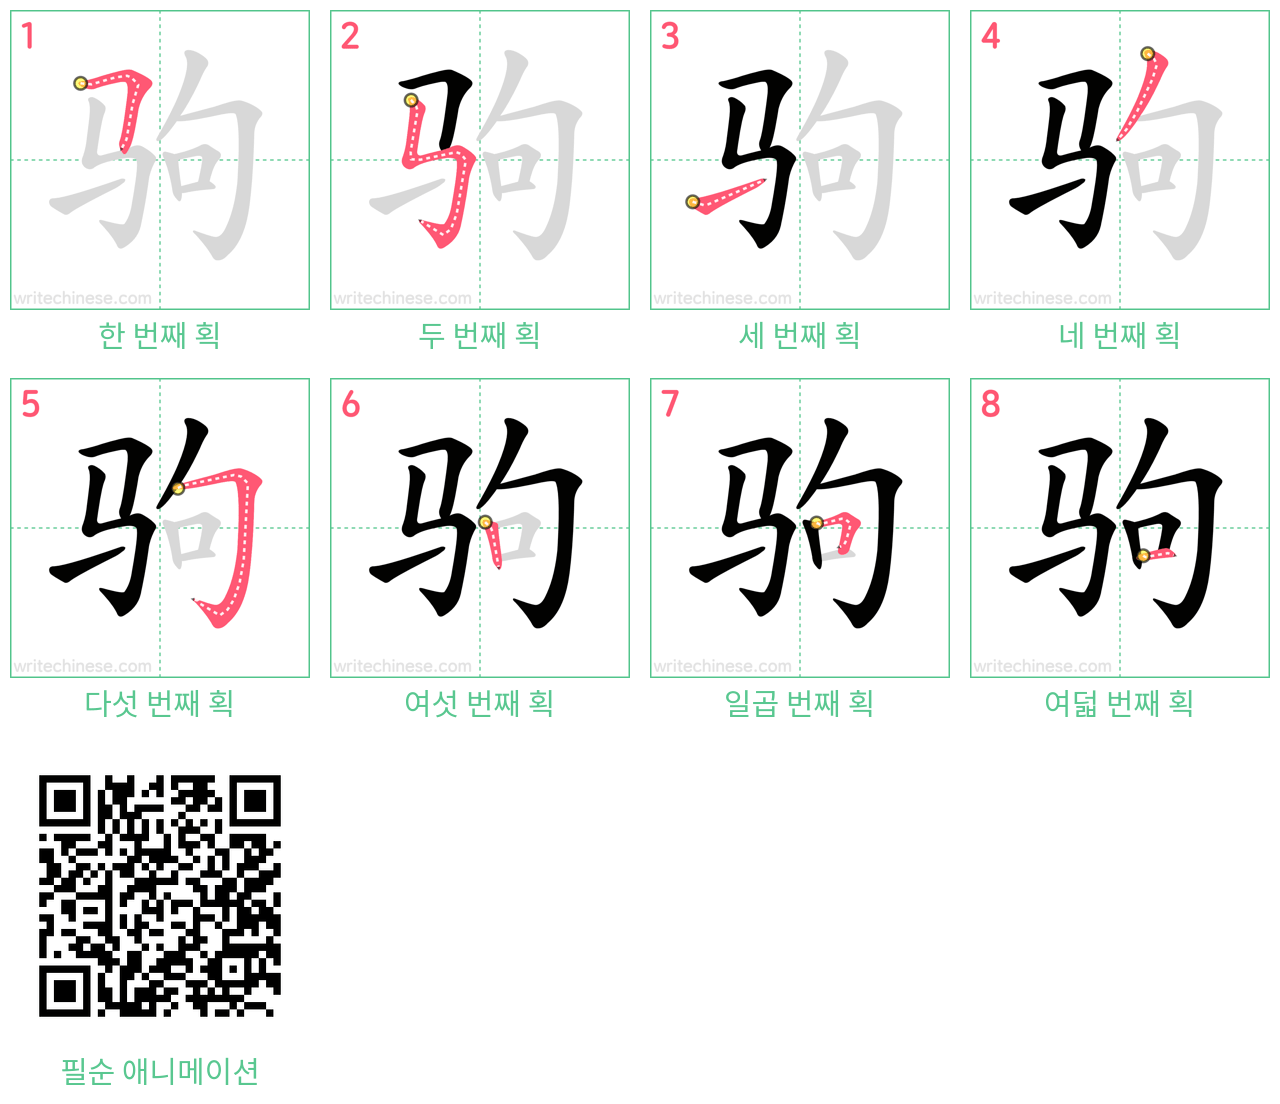 驹 step-by-step stroke order diagrams